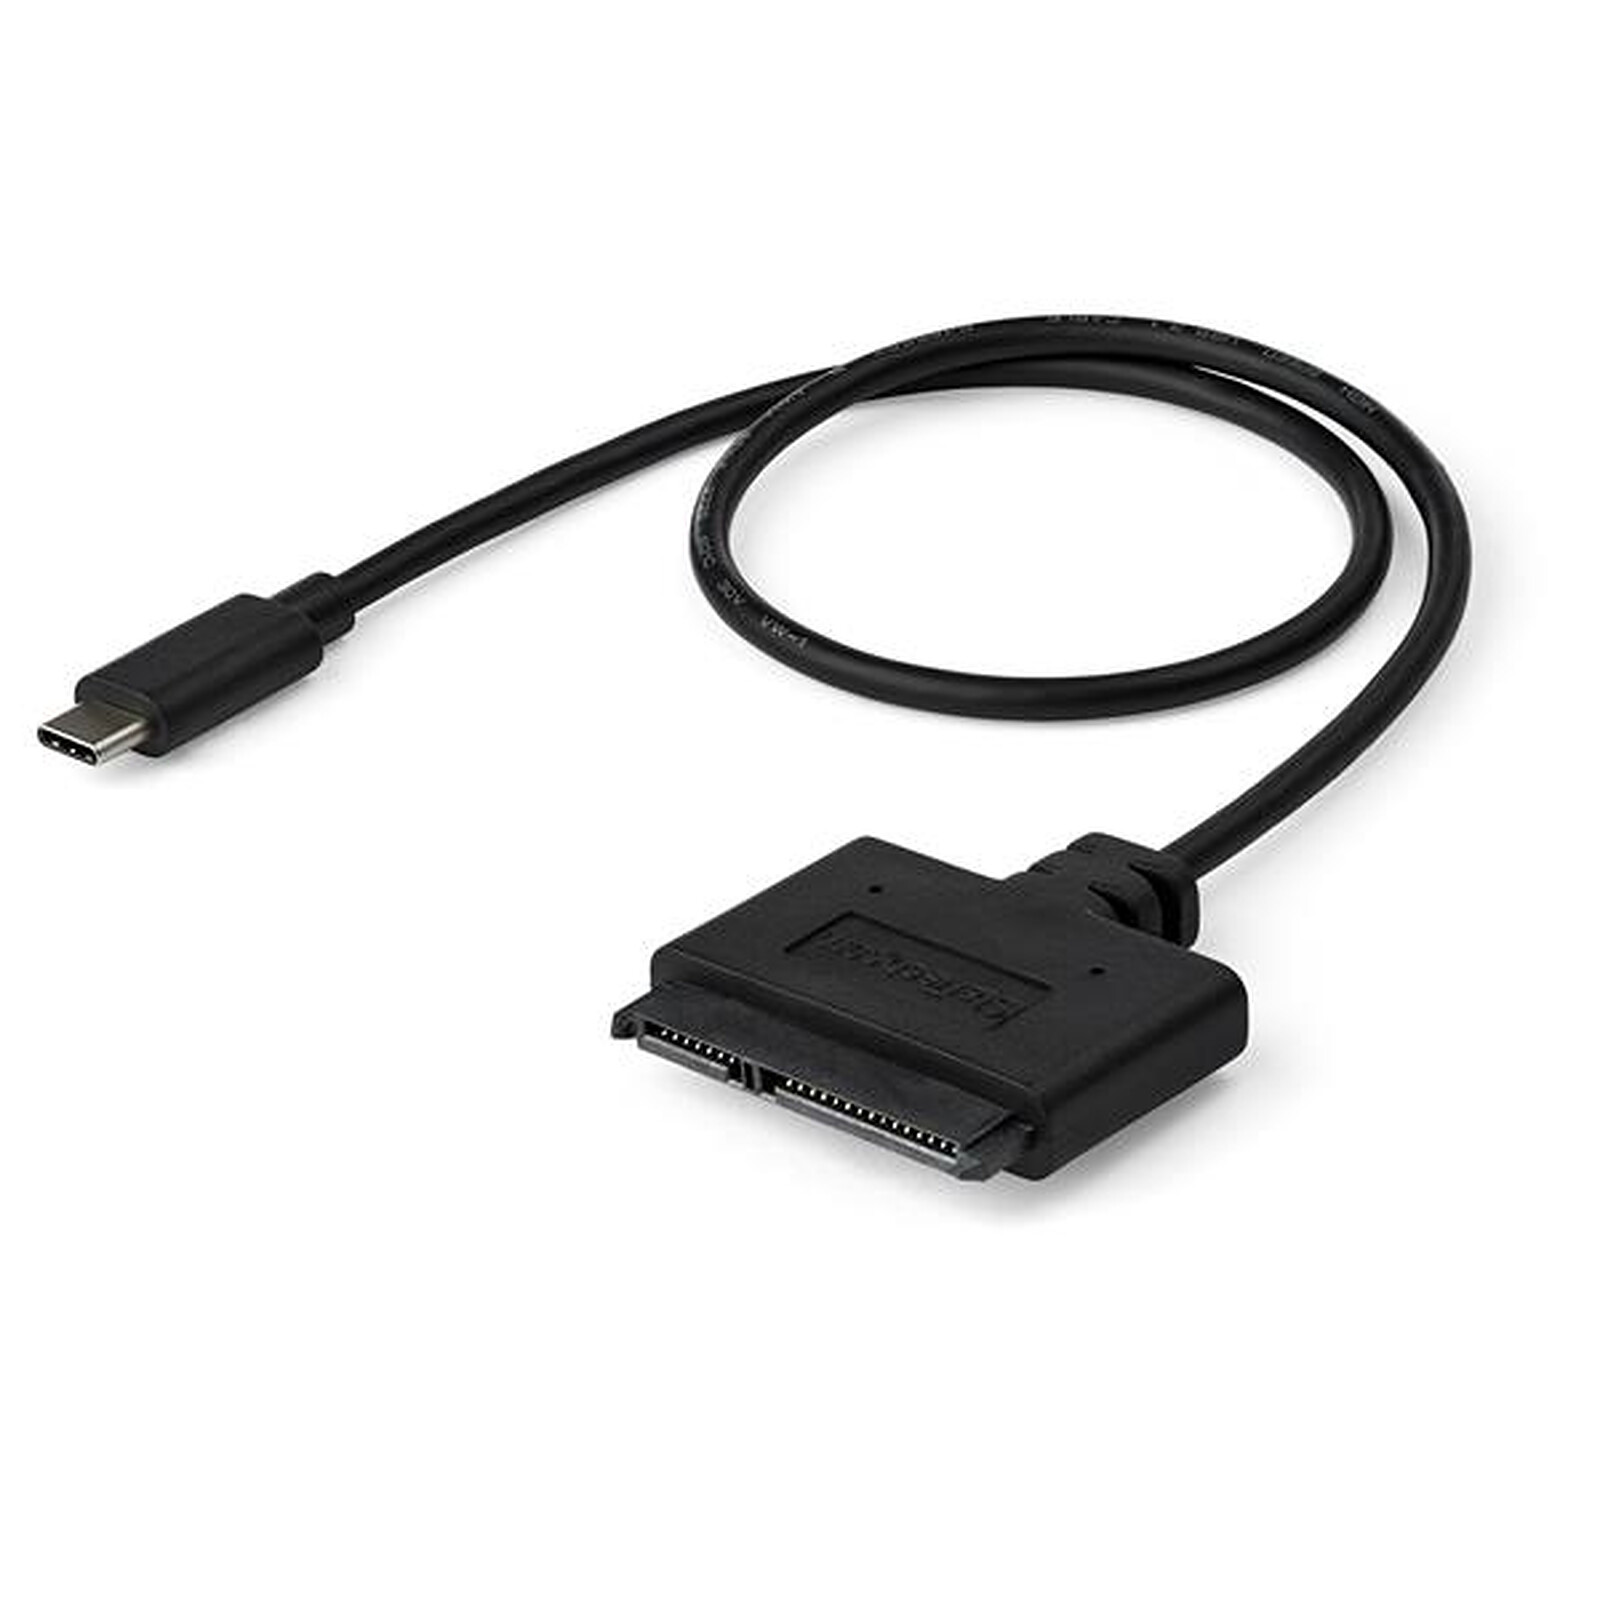 ASTUTO Adaptateur USB 3.0 vers SATA III pour disques durs HDD et SSD de 2,5 câble convertisseur USB 3.0 pour connecter des disques durs externes. 